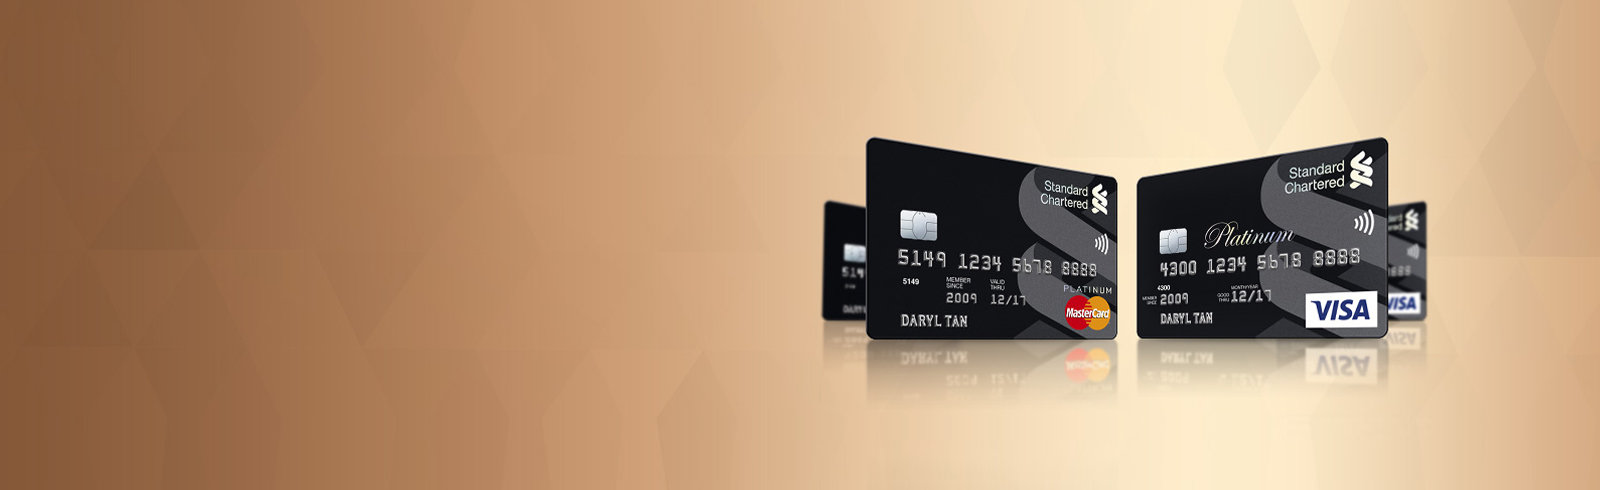 Platinum Visa/Mastercard® credit card